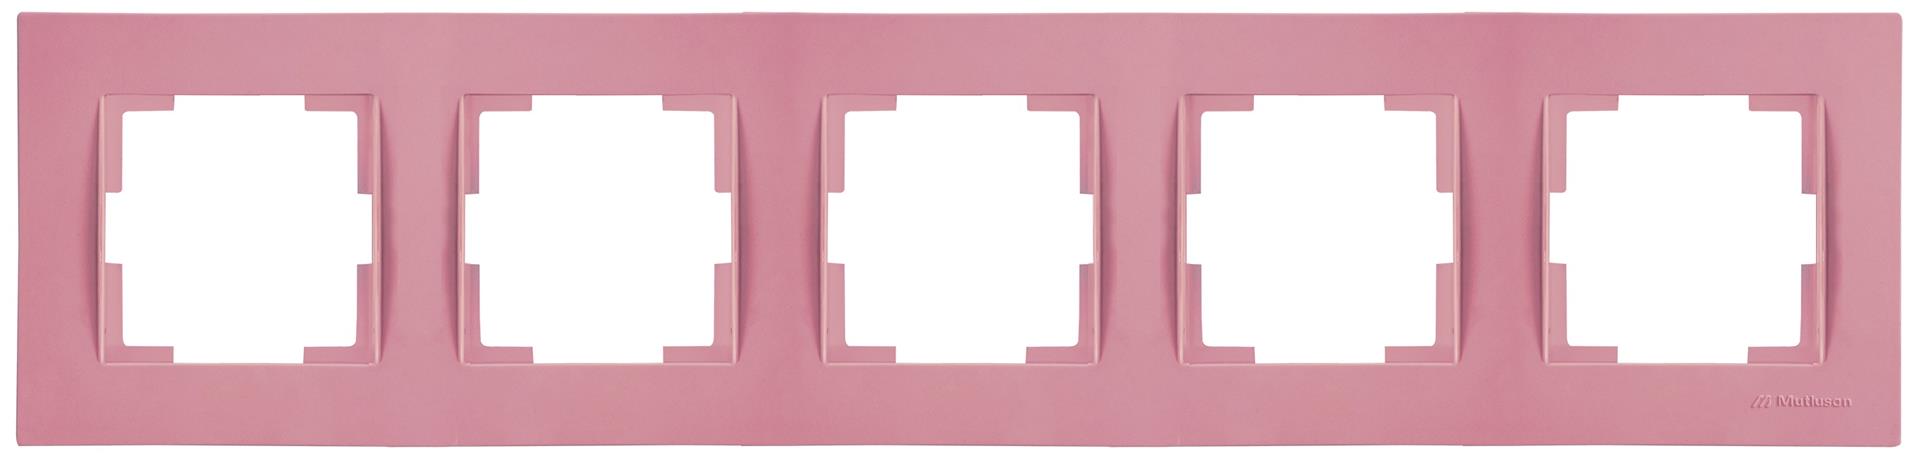 5 fach Rahmen horizontal Pink / Rosa (RITA Pastell Farben)